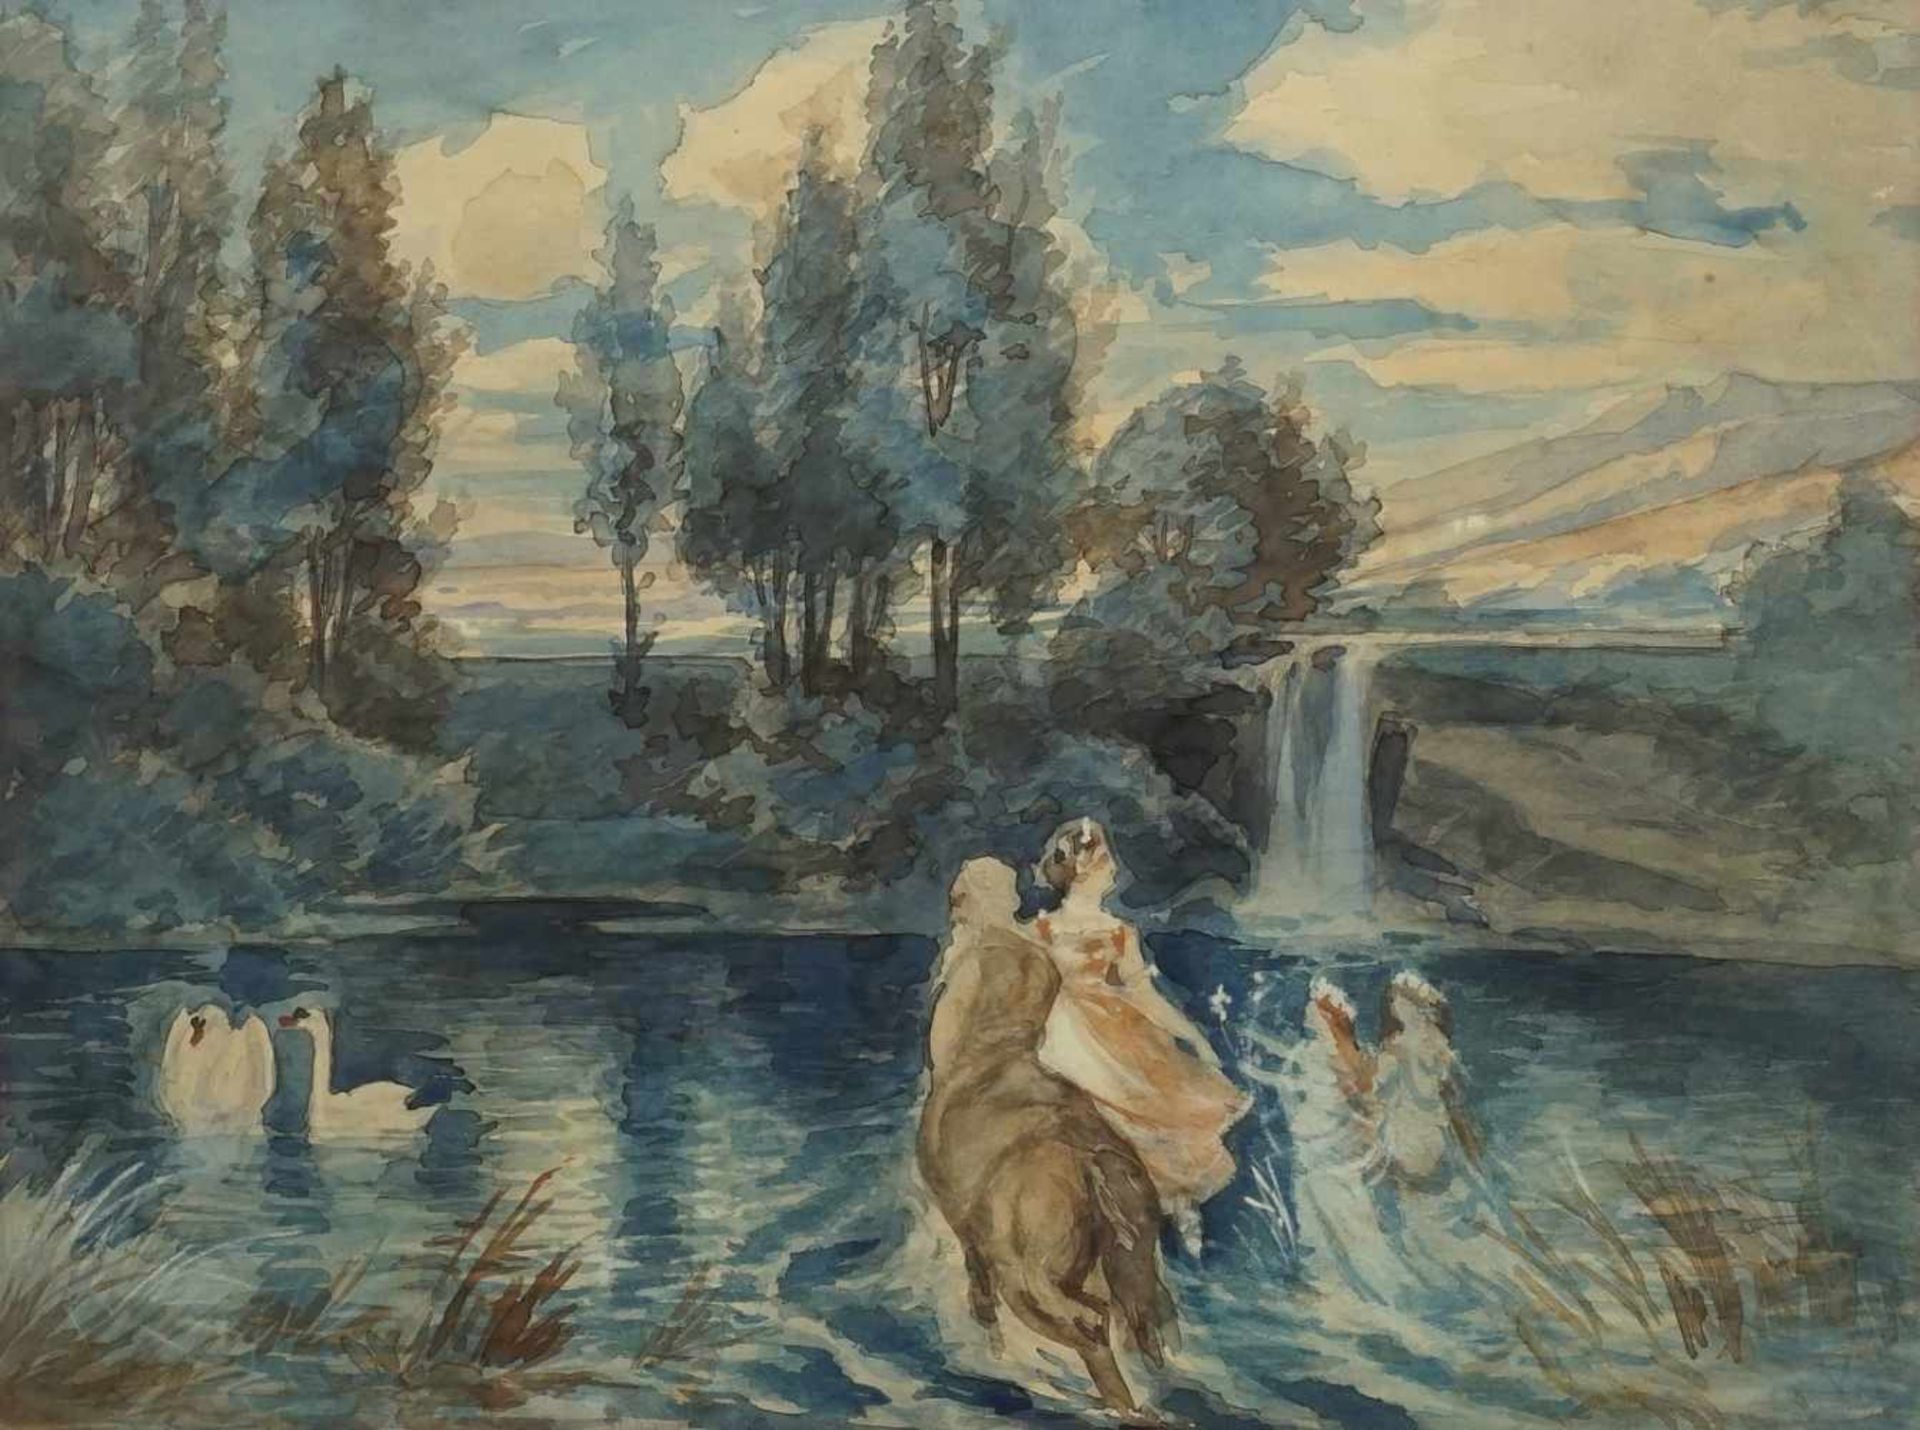 Unbekannter Maler, "Landschaft mit Wasserfall"Aquarell/Papier, mit Phantasiegestalten, altersgemäß